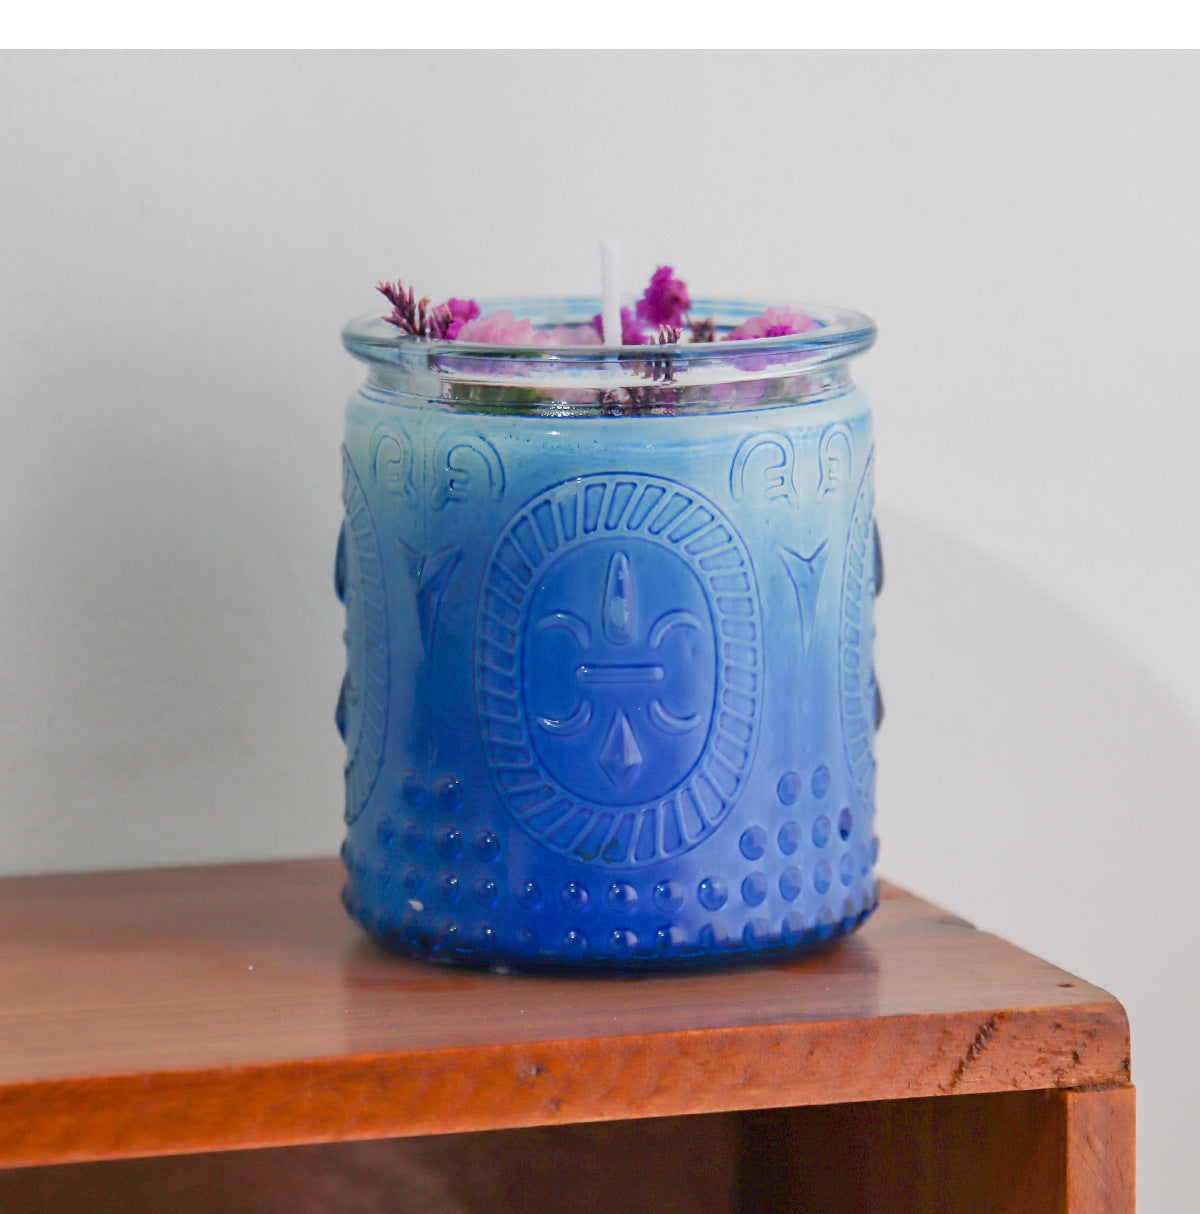 手作りのエッチングガラスカップ – 絶妙なデザインのDIYアロマセラピーキャンドルコンテナ、2.36インチ*2.76インチ。